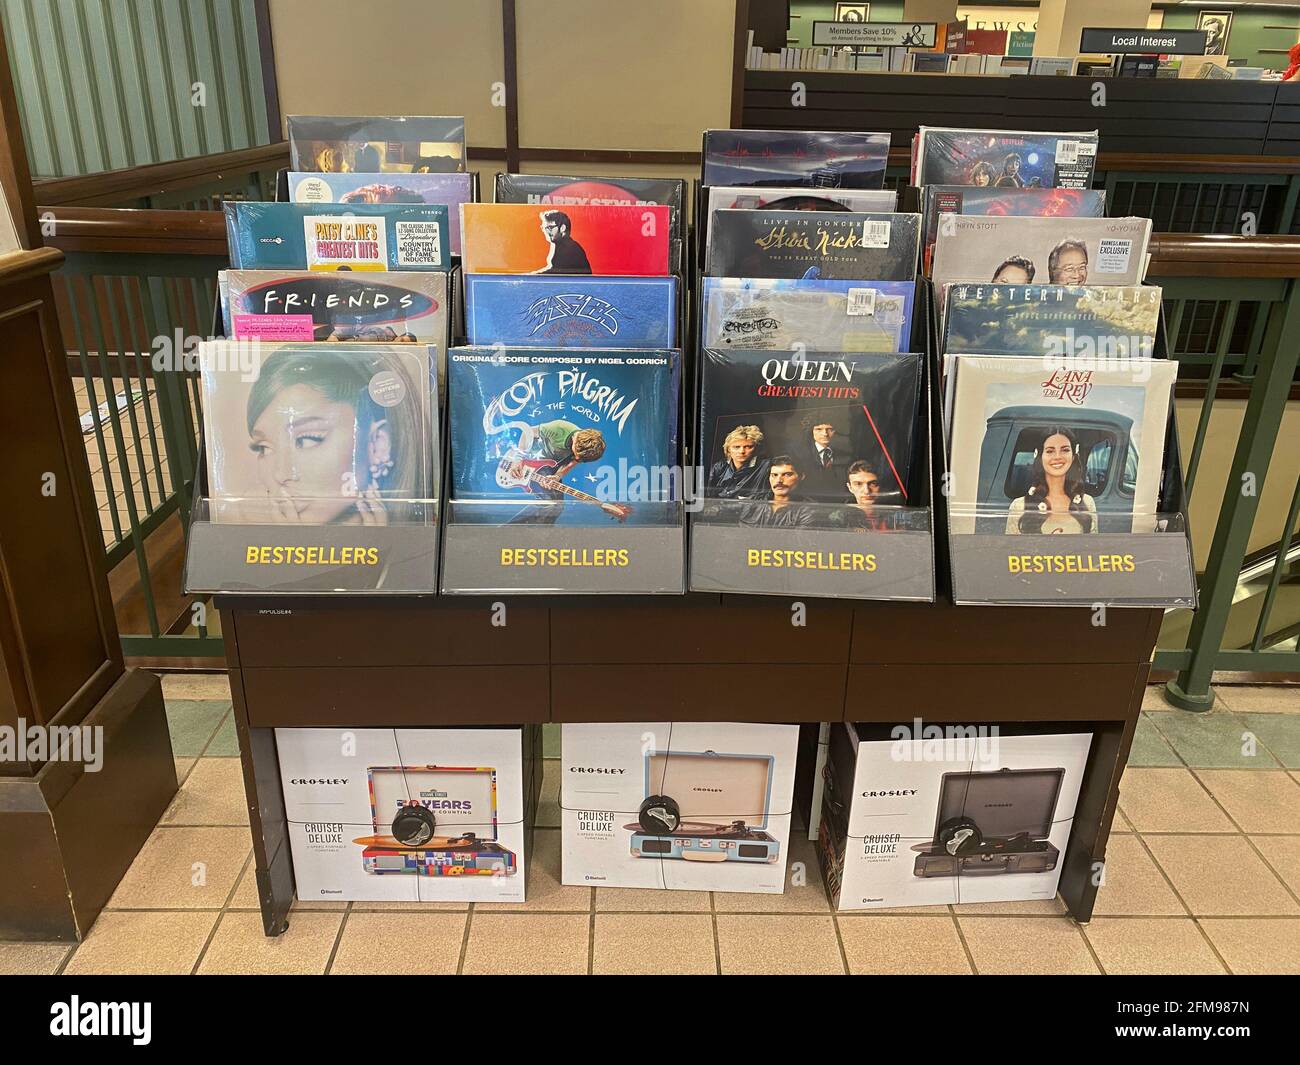 Les disques vinyles ont connu une reprise ces dernières années, comme l'ont vu cette exposition de disques et de joueurs de disques en vente dans un magasin Barnes & Noble à Brooklyn, New York. Banque D'Images